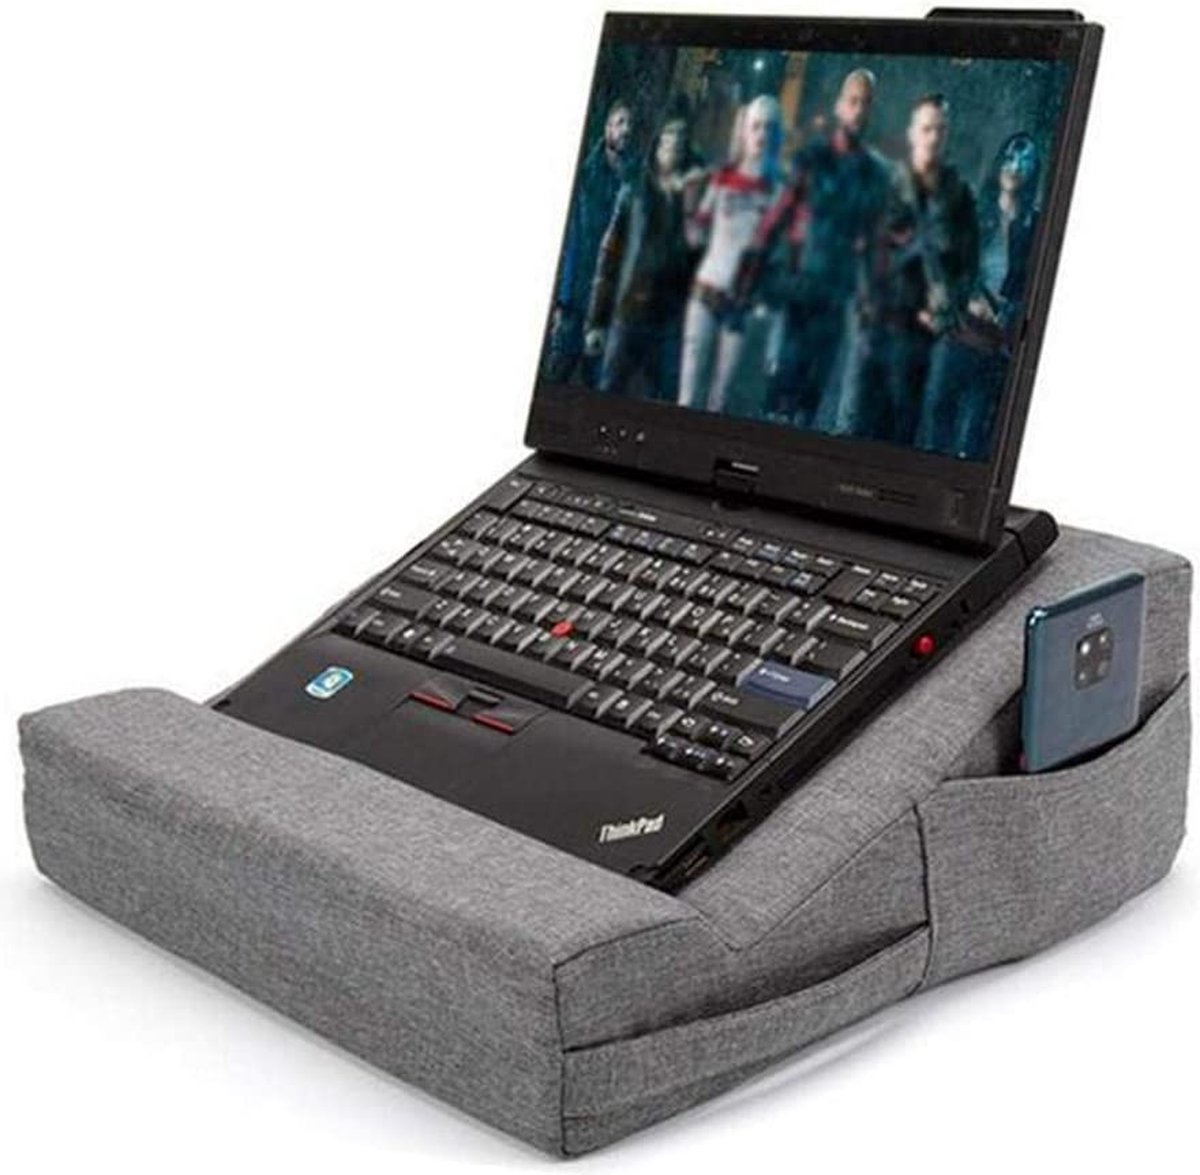 Opline - Notebookstandaard - Tablet en laptophouder - LB-540 - Kussen - Draagbaar - Voor op bed, vloer, bureau, schoot of bank - Grijs